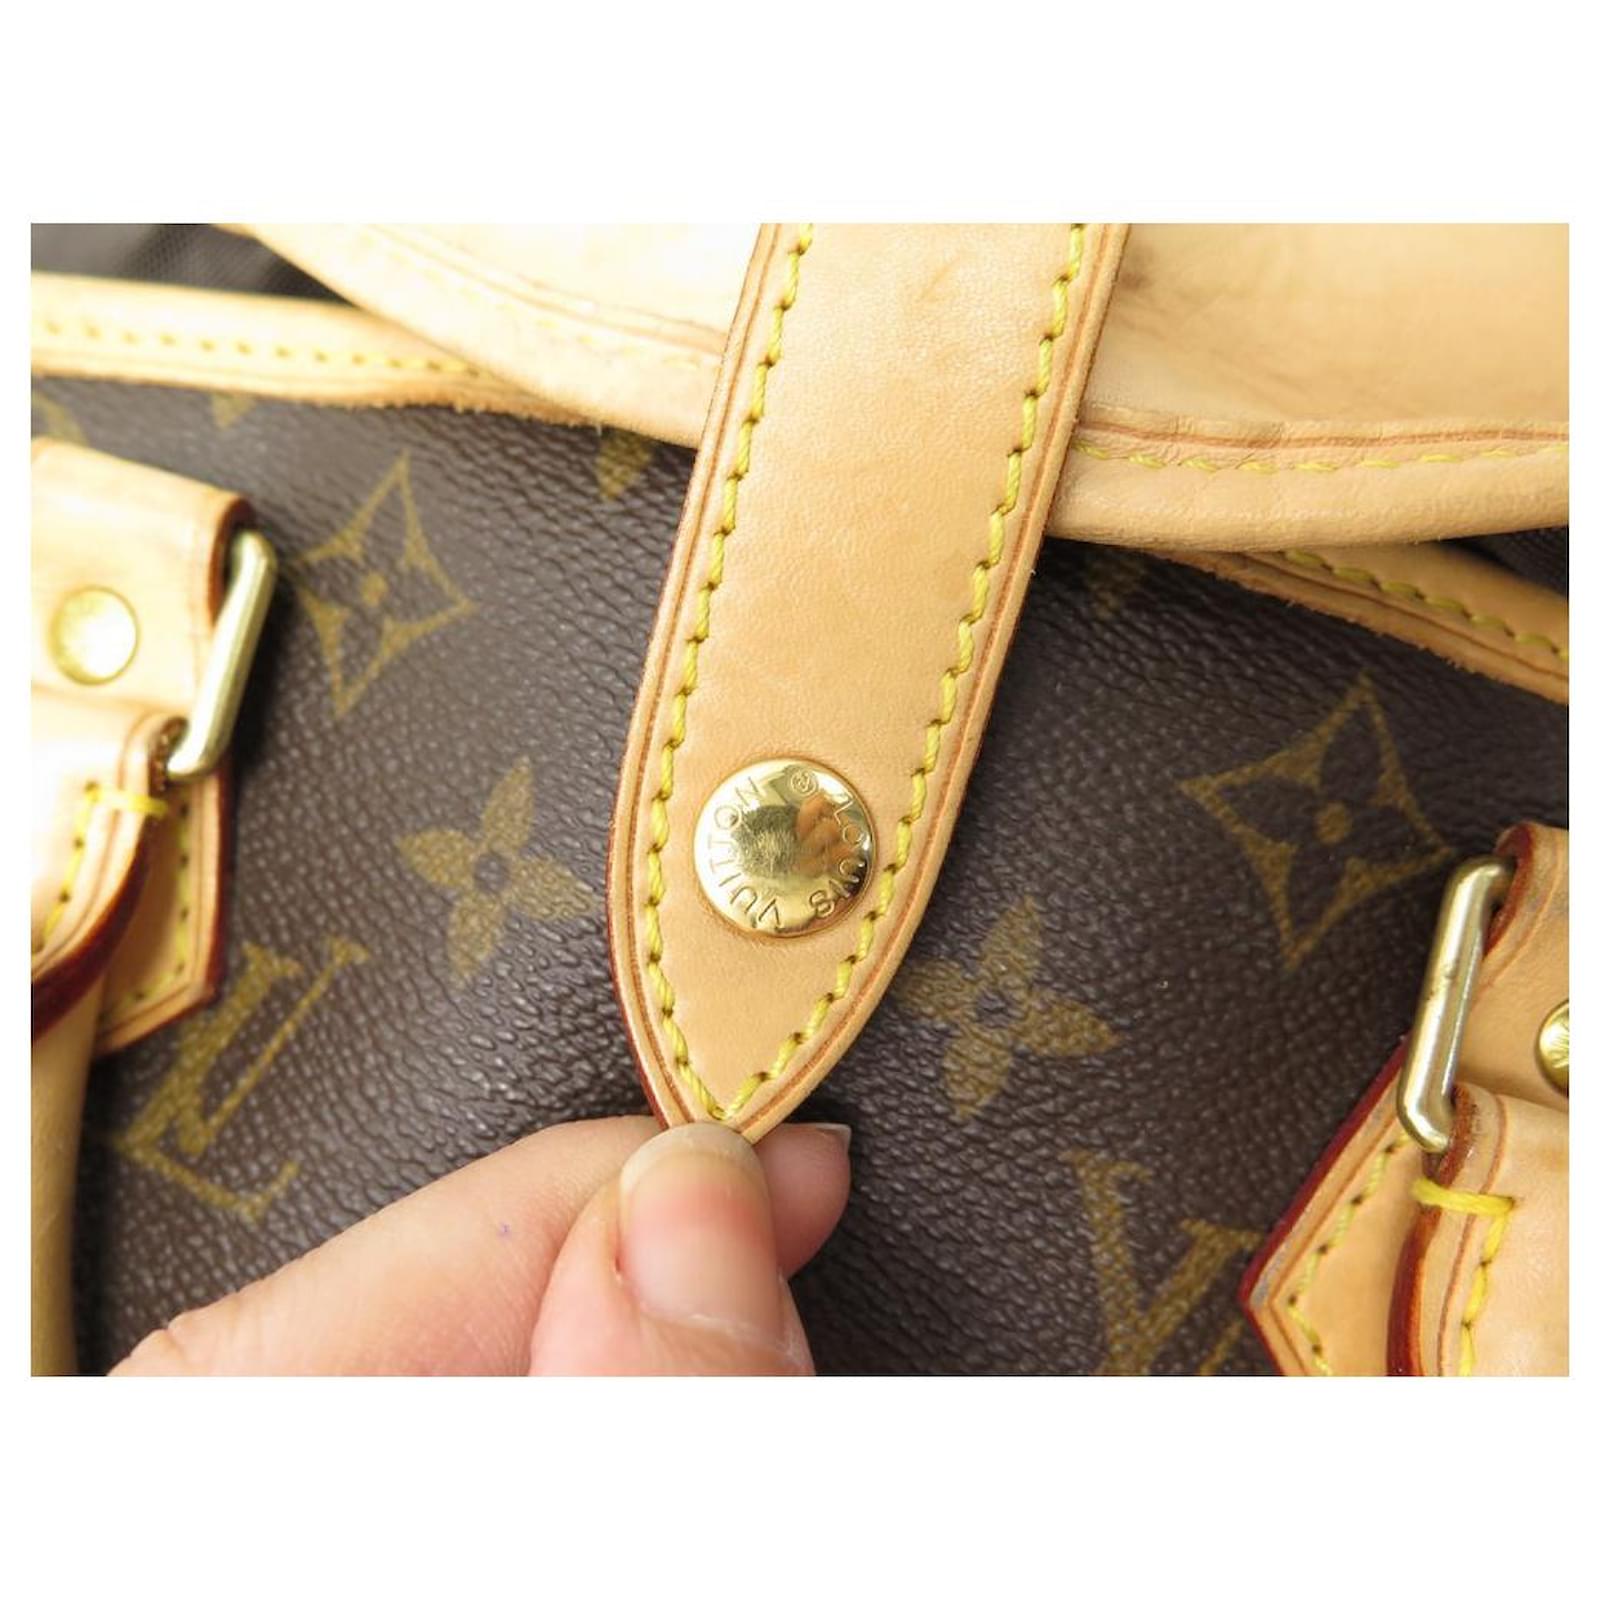 Garment cloth travel bag Louis Vuitton Brown in Cloth - 26706880